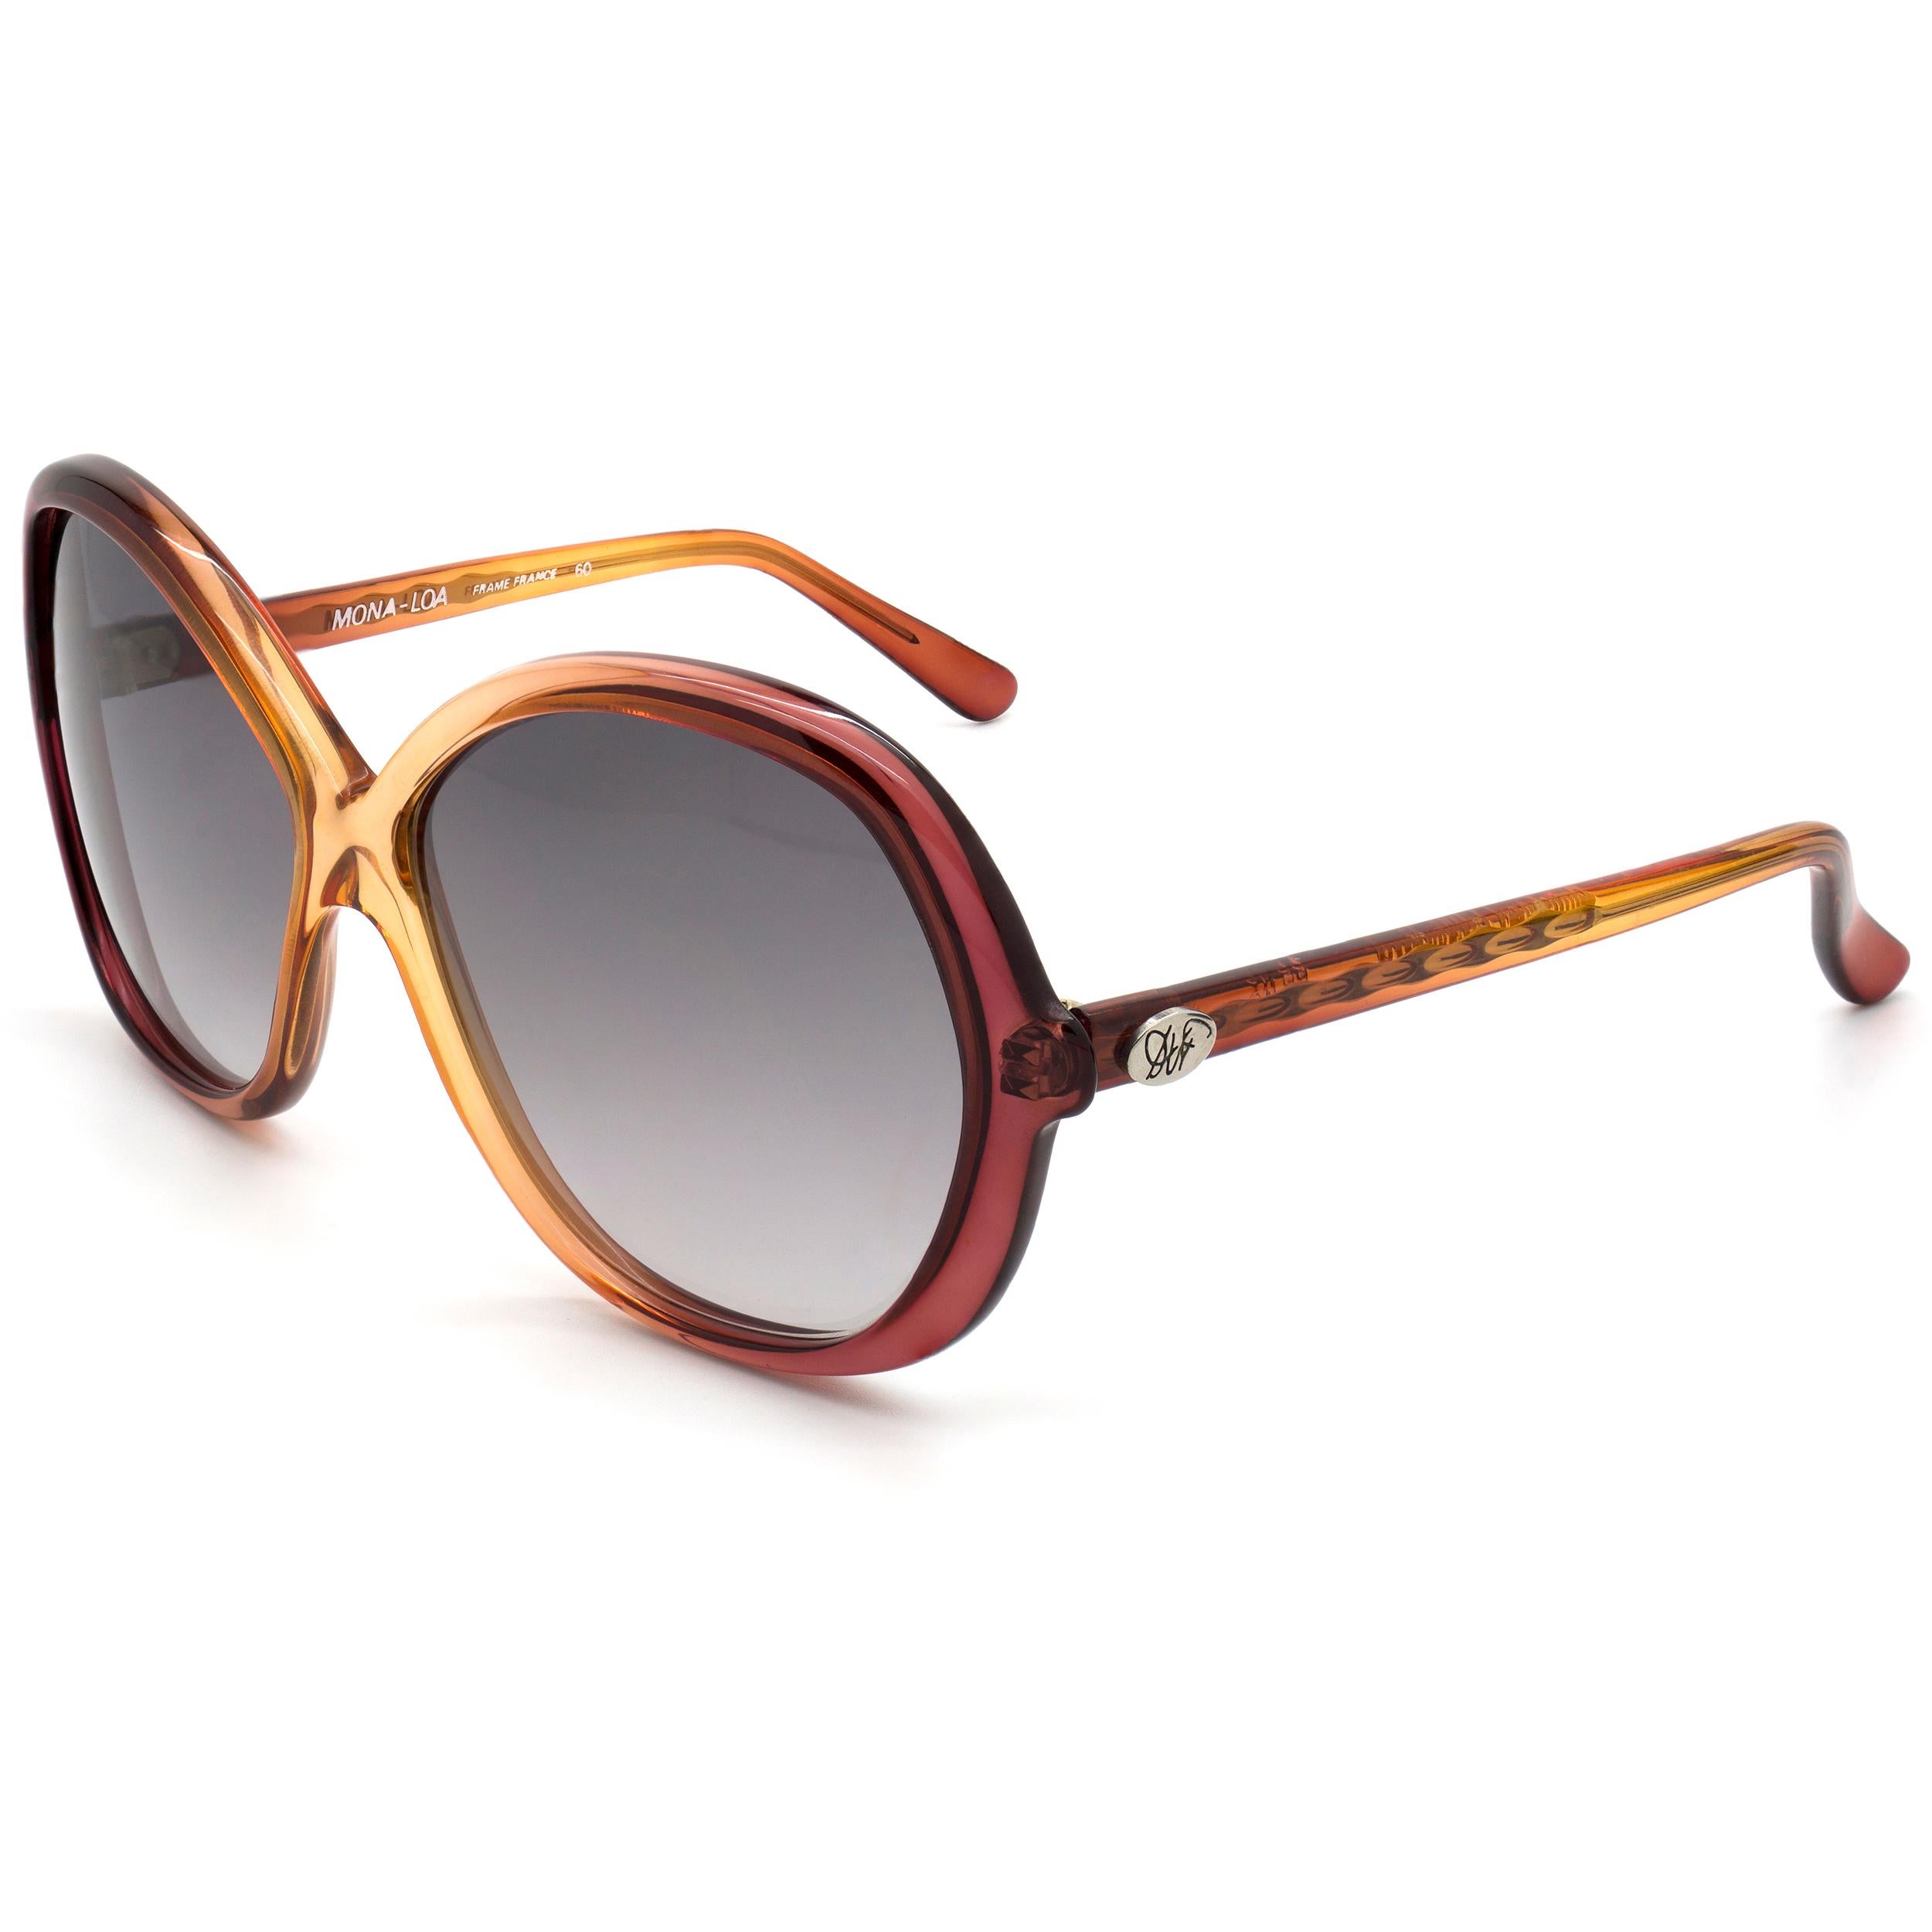 Women's Diane von Furstenberg butterfly vintage sunglasses, France 70s